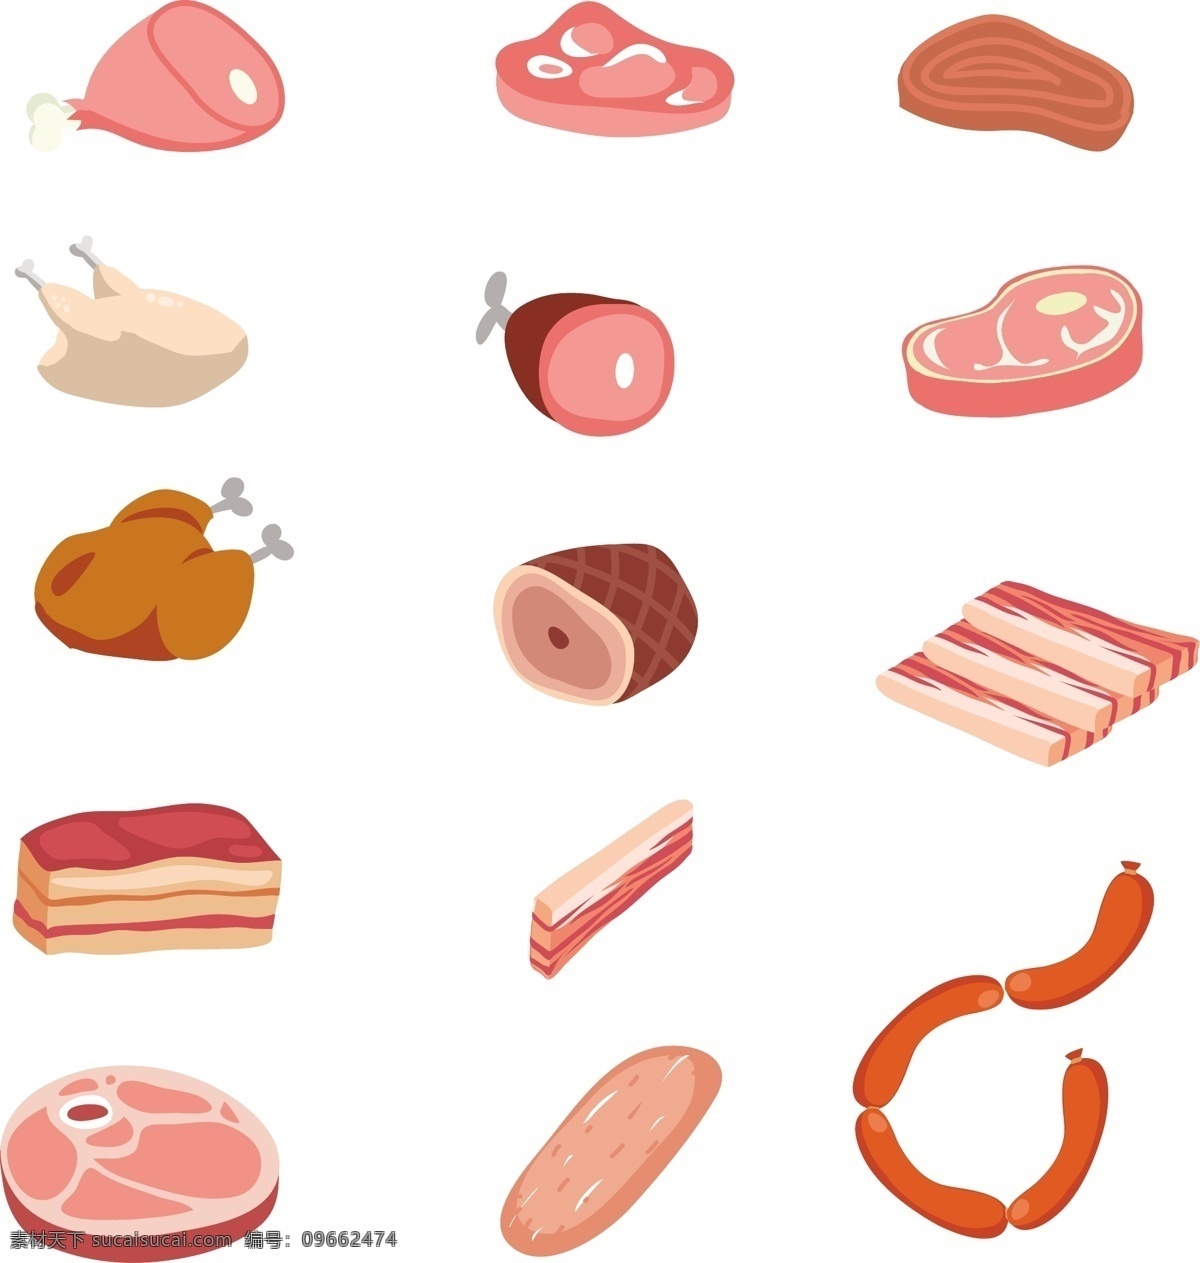 鲜肉食品 食品 卡通 鸡 壁纸 土耳其 牛肉 香肠 屠夫 猪肉 培根 饥饿 小品 鲜肉